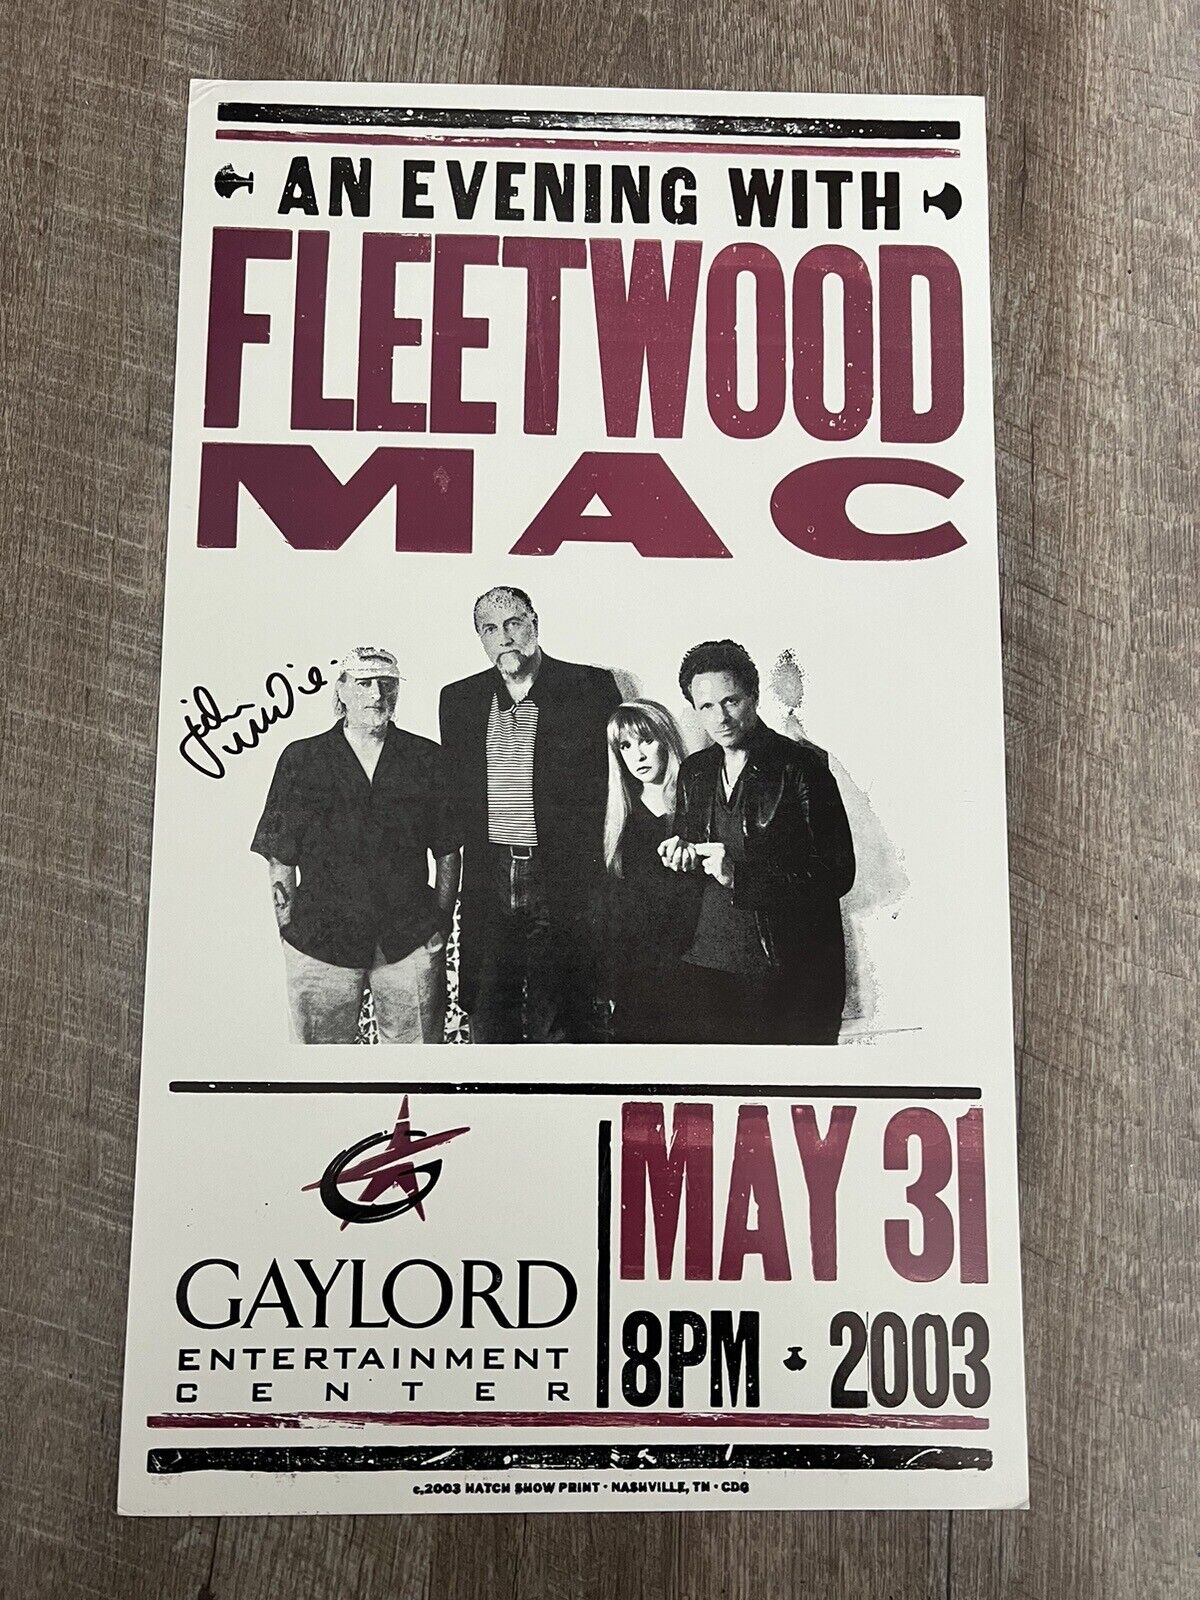 An Evening with Fleetwood Mac 5/31/03 Show Nashville John McVie Autograph Poster